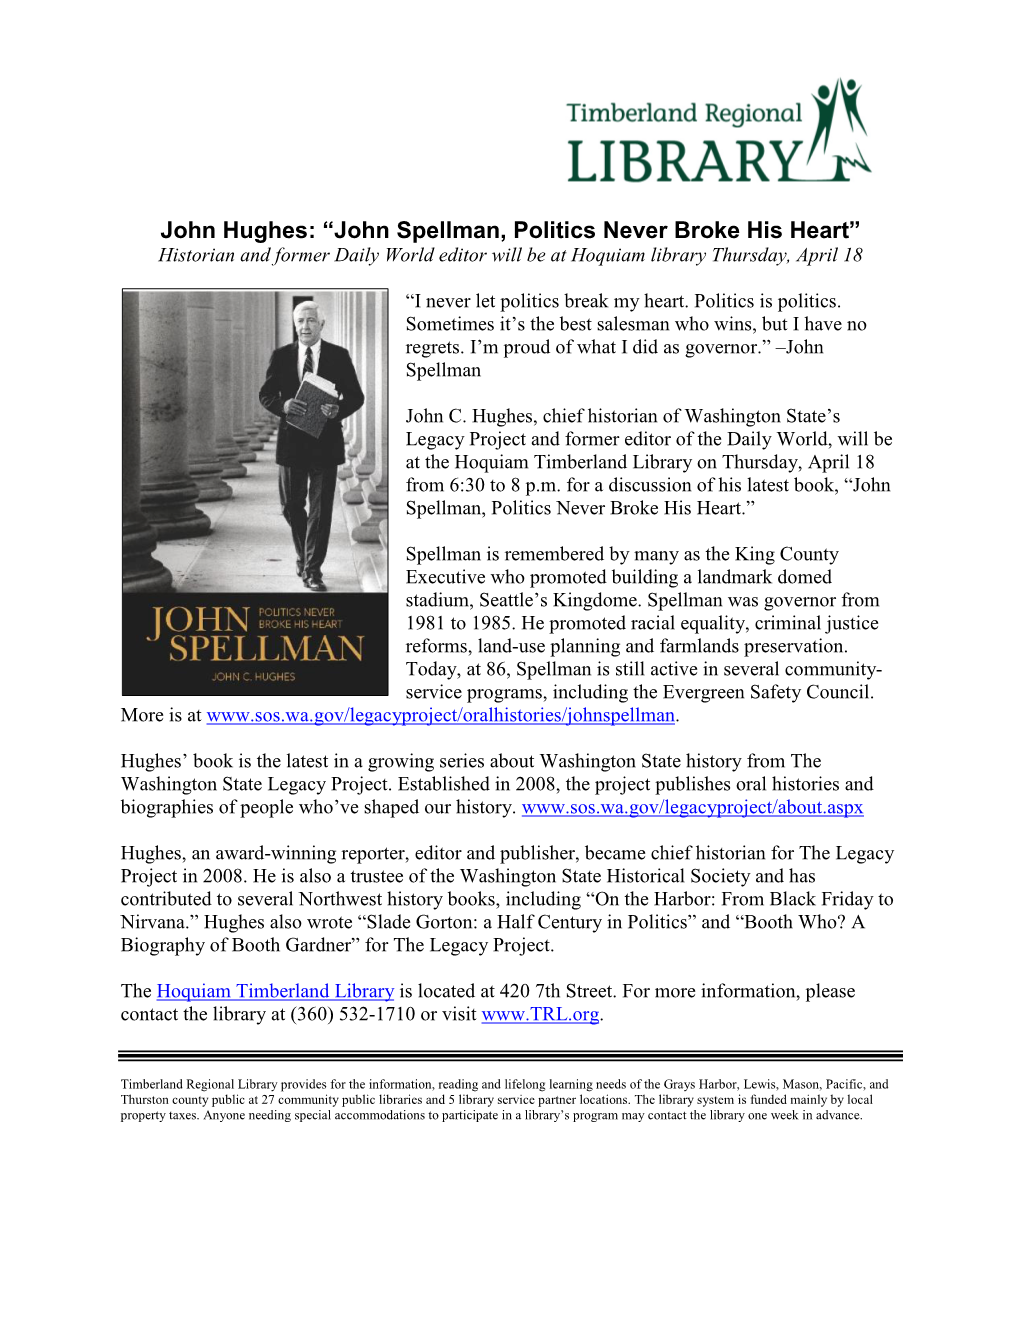 John Hughes: “John Spellman, Politics Never Broke His Heart” Historian and Former Daily World Editor Will Be at Hoquiam Library Thursday, April 18